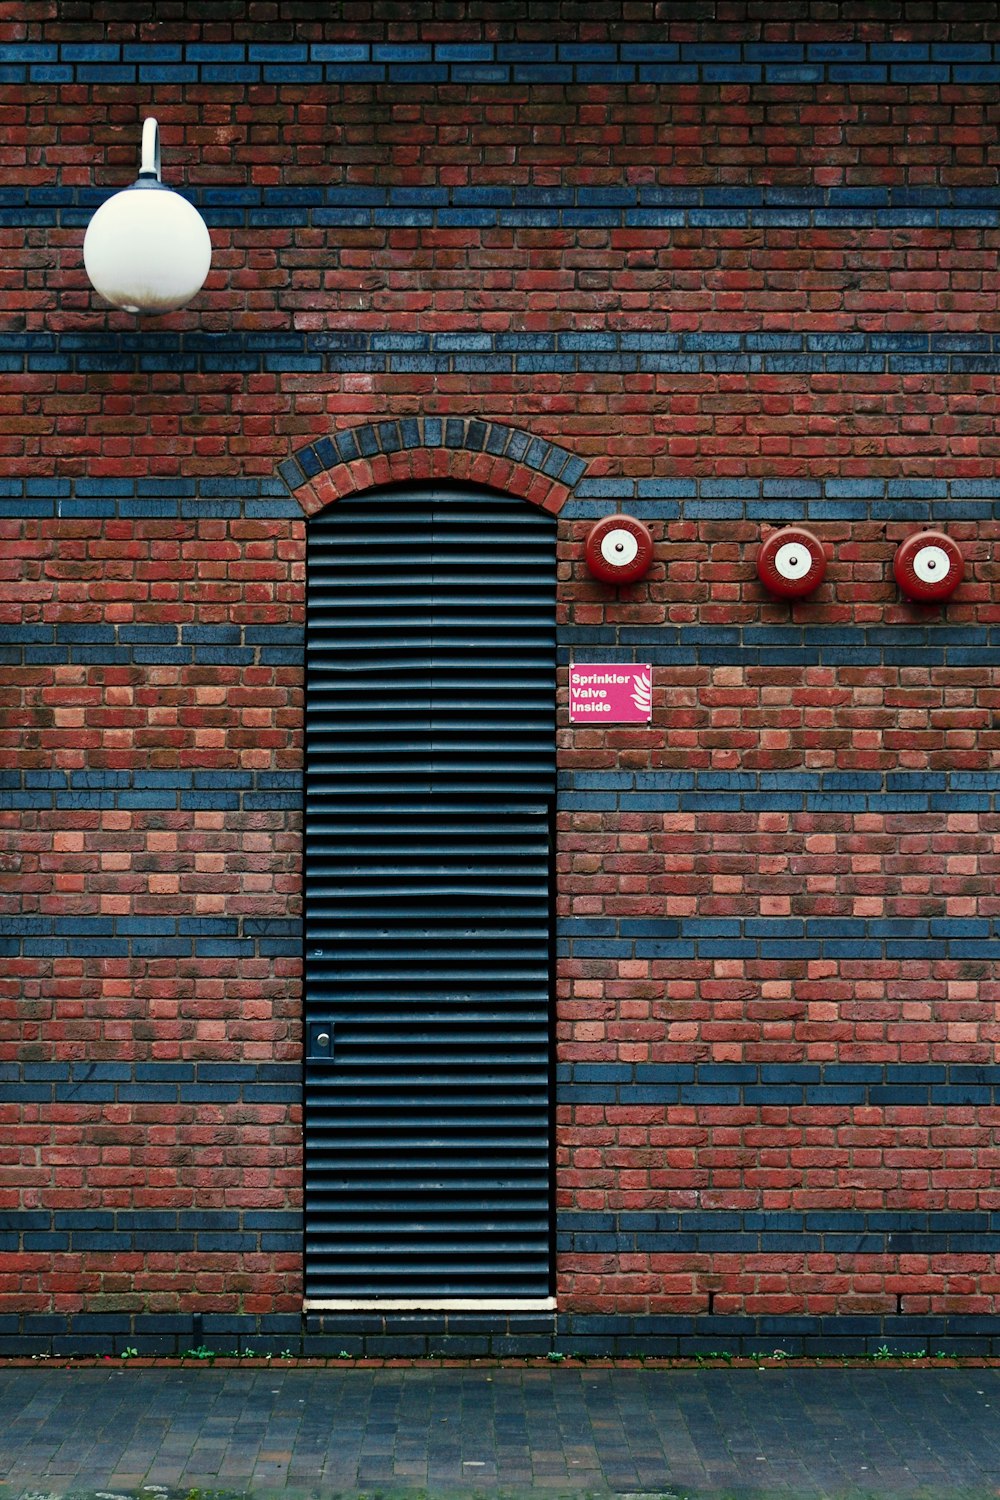 Un edificio de ladrillo rojo con una puerta negra